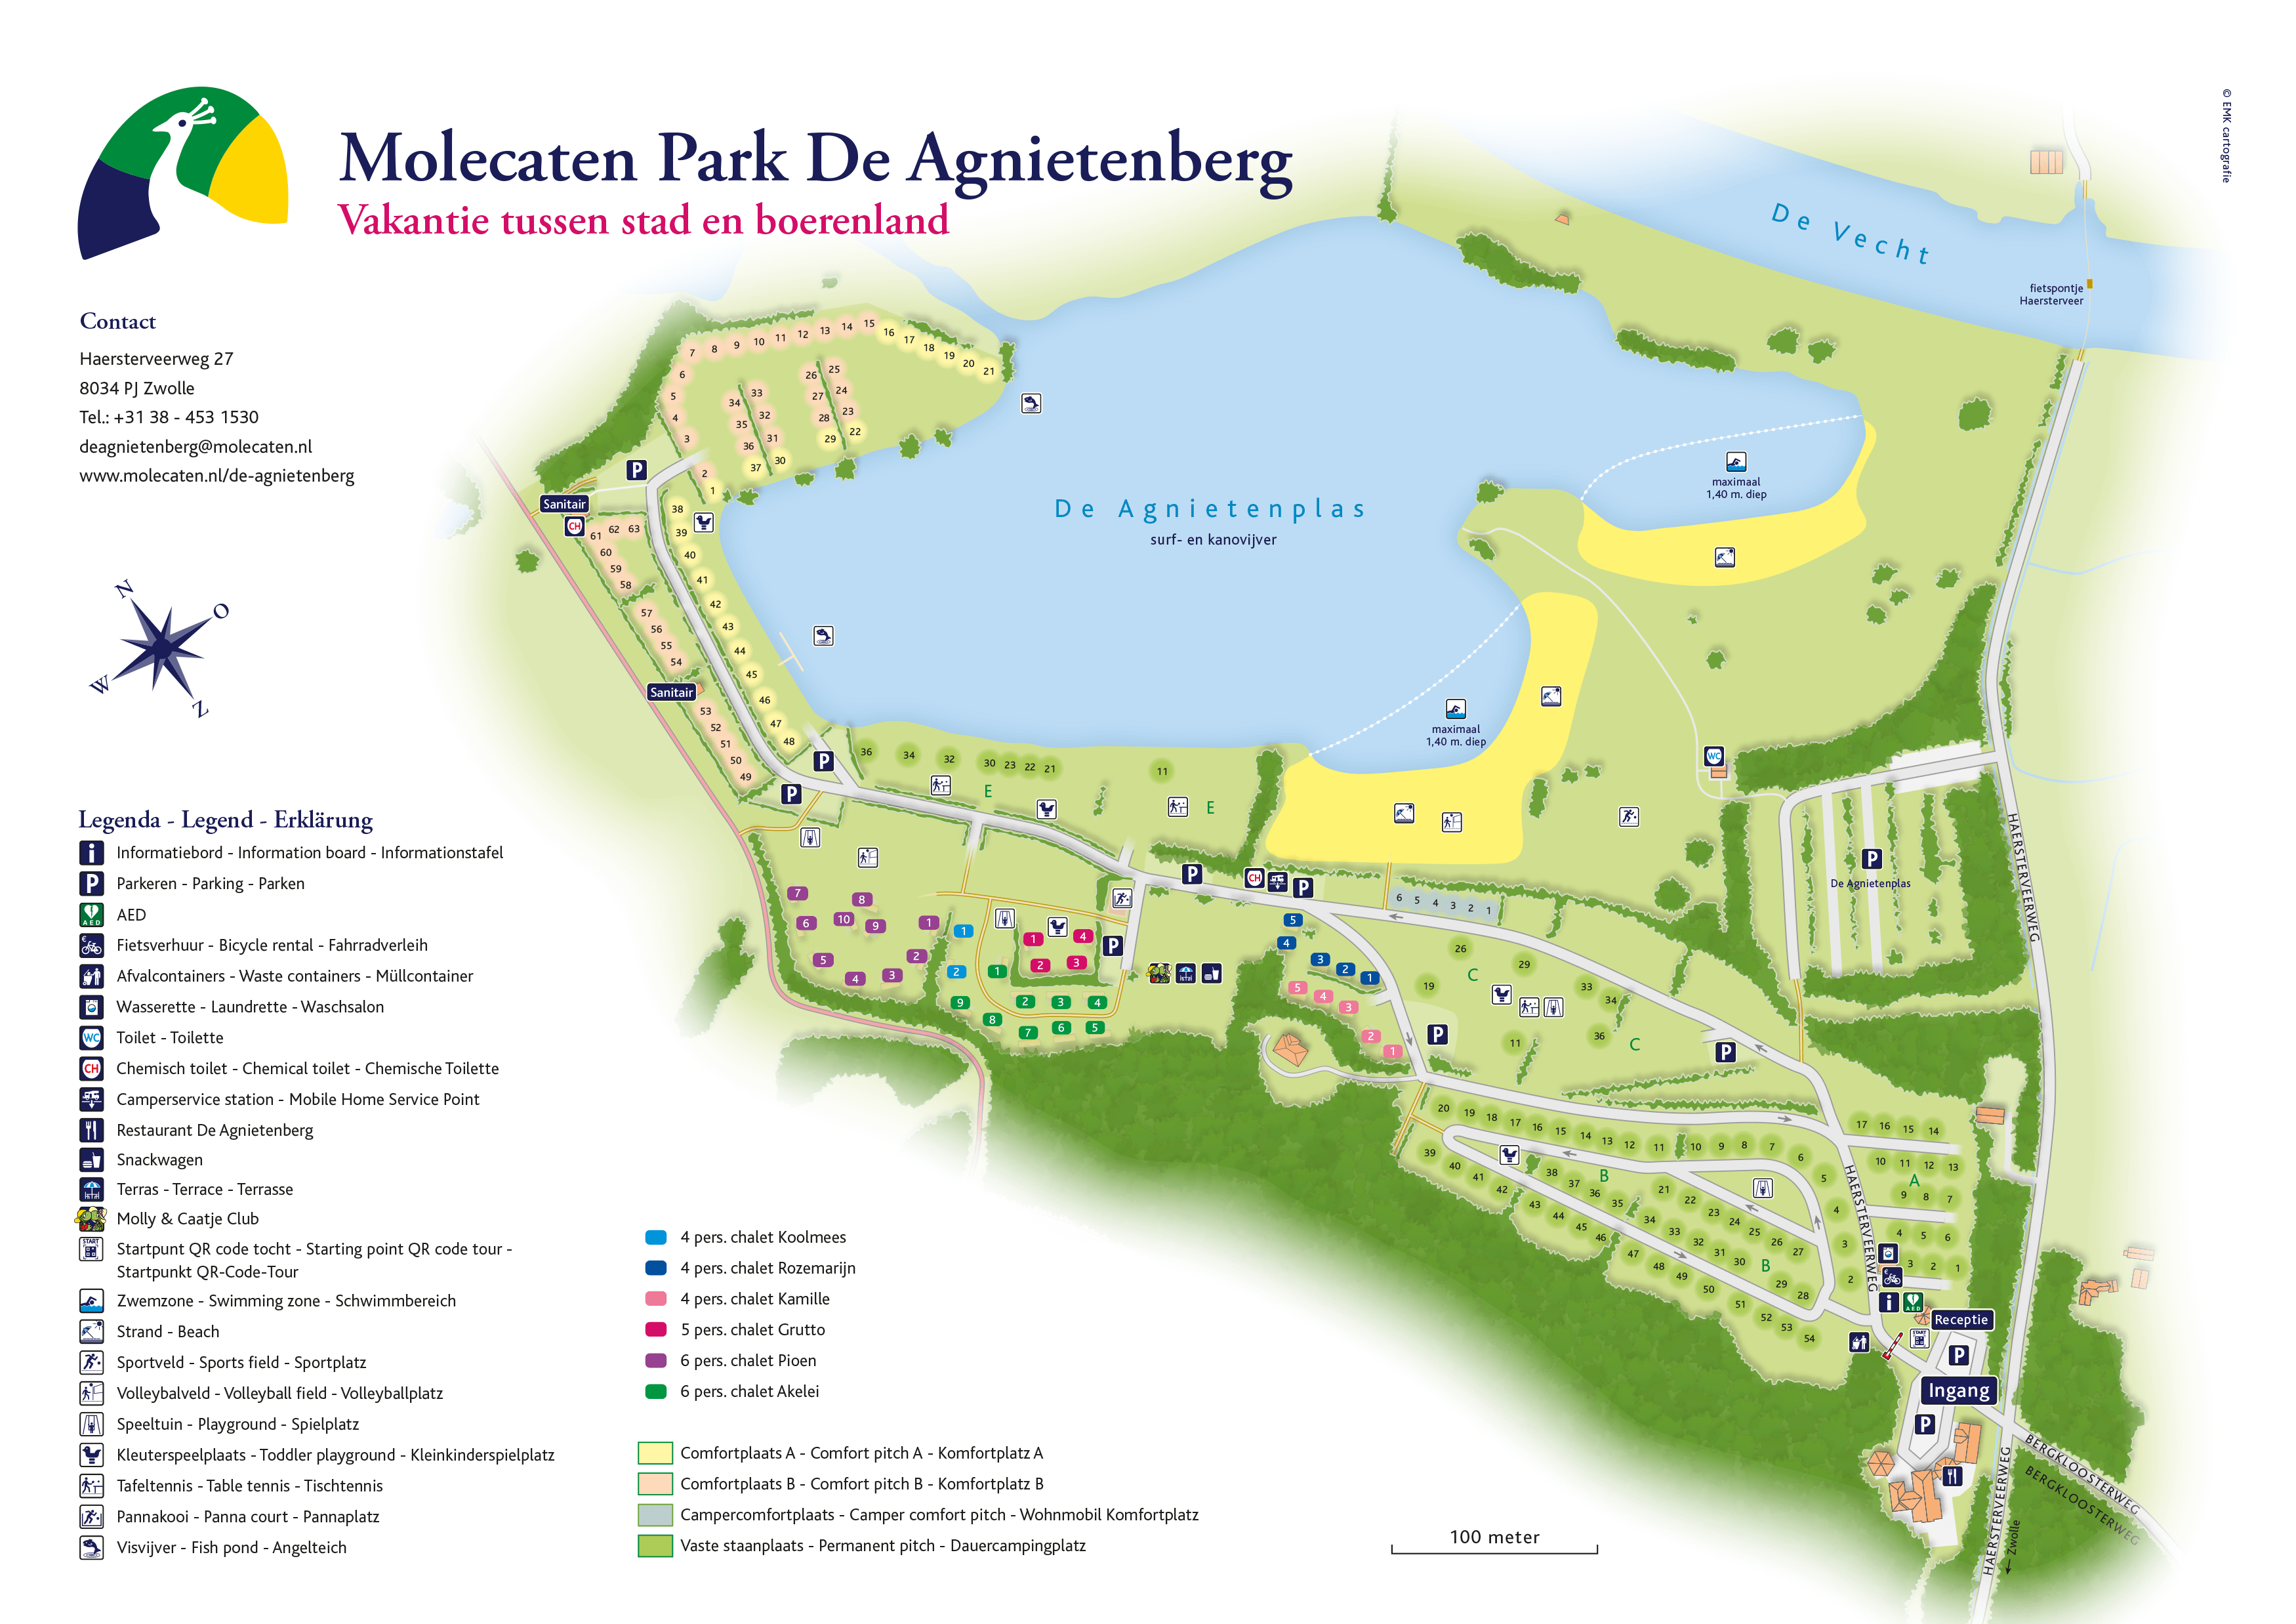 Molecaten Park De Agnietenberg accommodation.parkmap.alttext